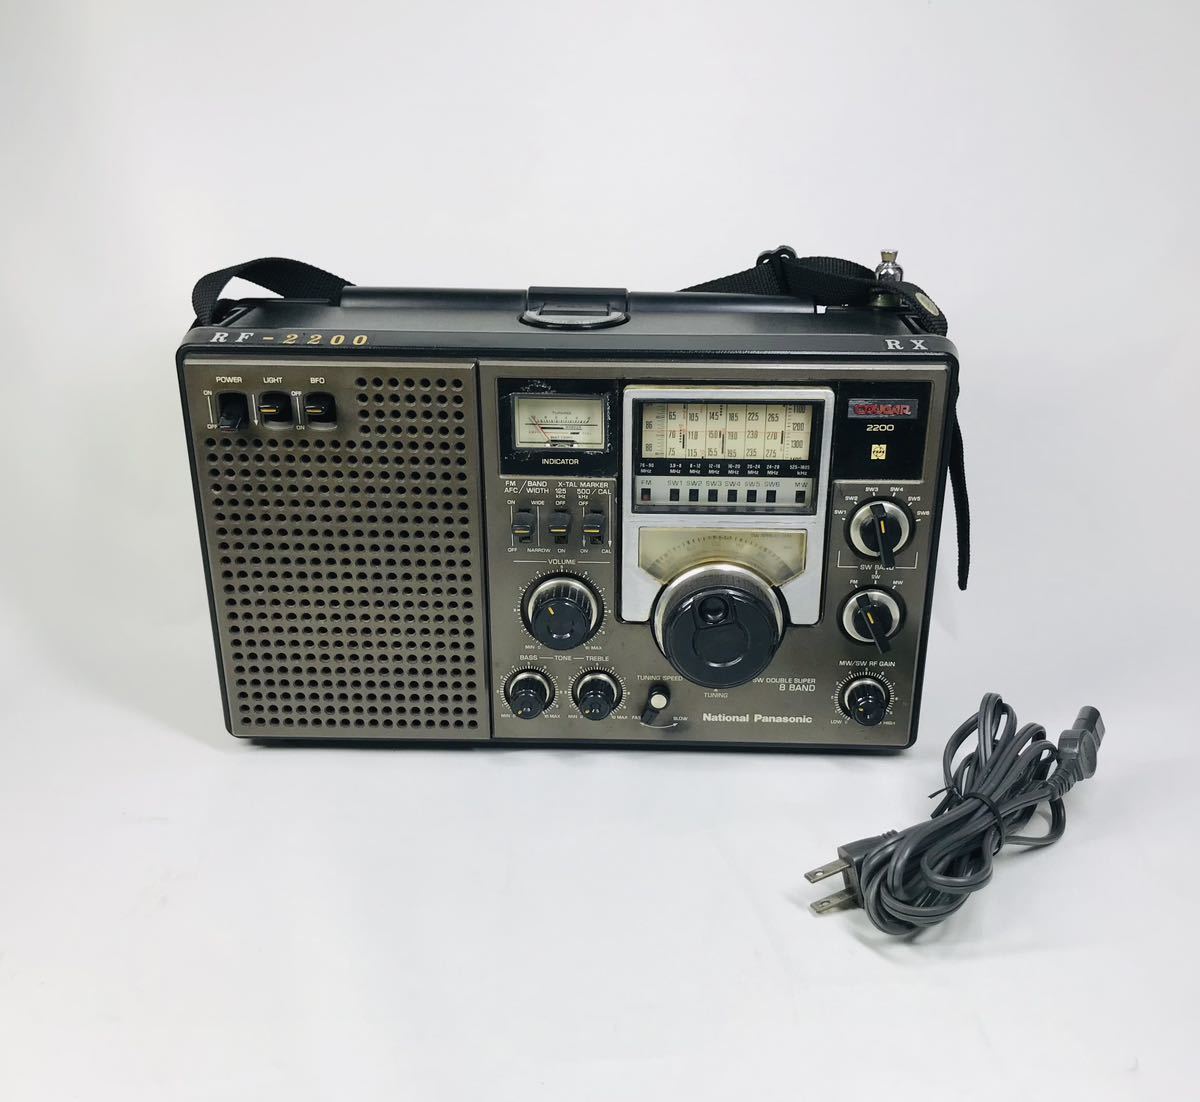 National Panasonic ナショナル パナソニック COUGAR クーガー ラジオ RF-2200 クーガー2200 Panasonic National クーガー BCLラジオ